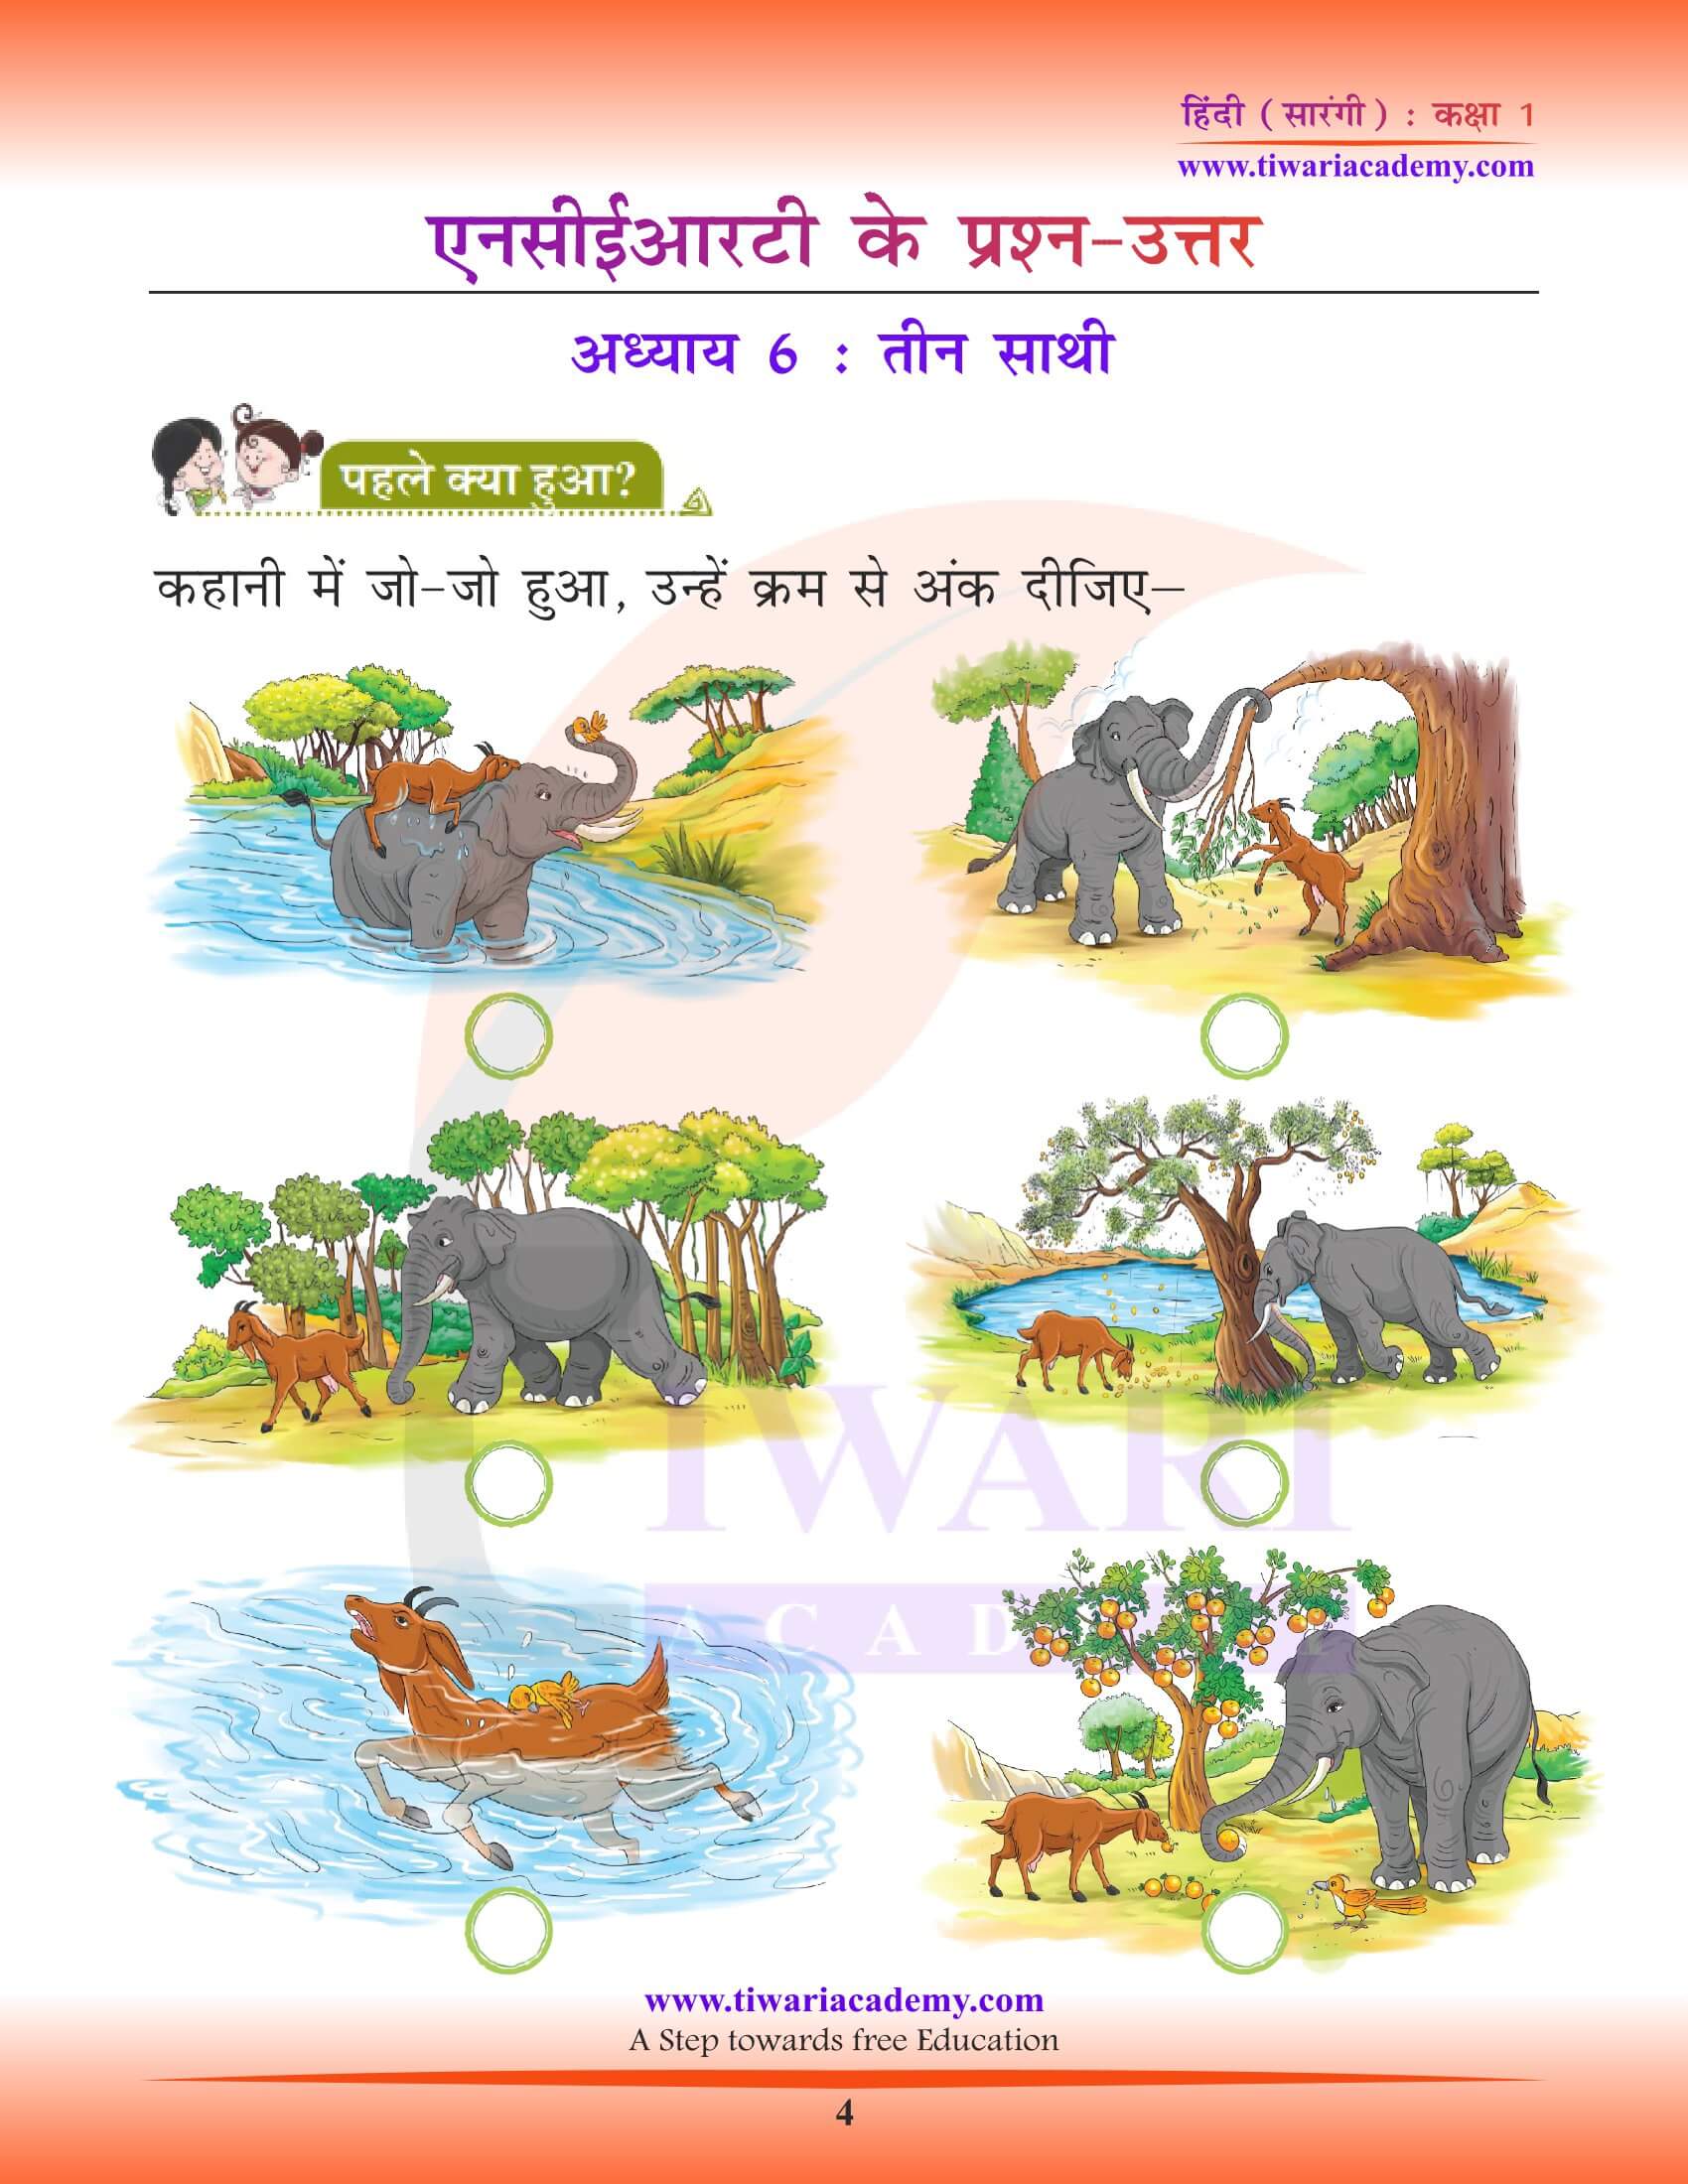 कक्षा 1 हिंदी सारंगी पाठ 6 अभ्यास के हल